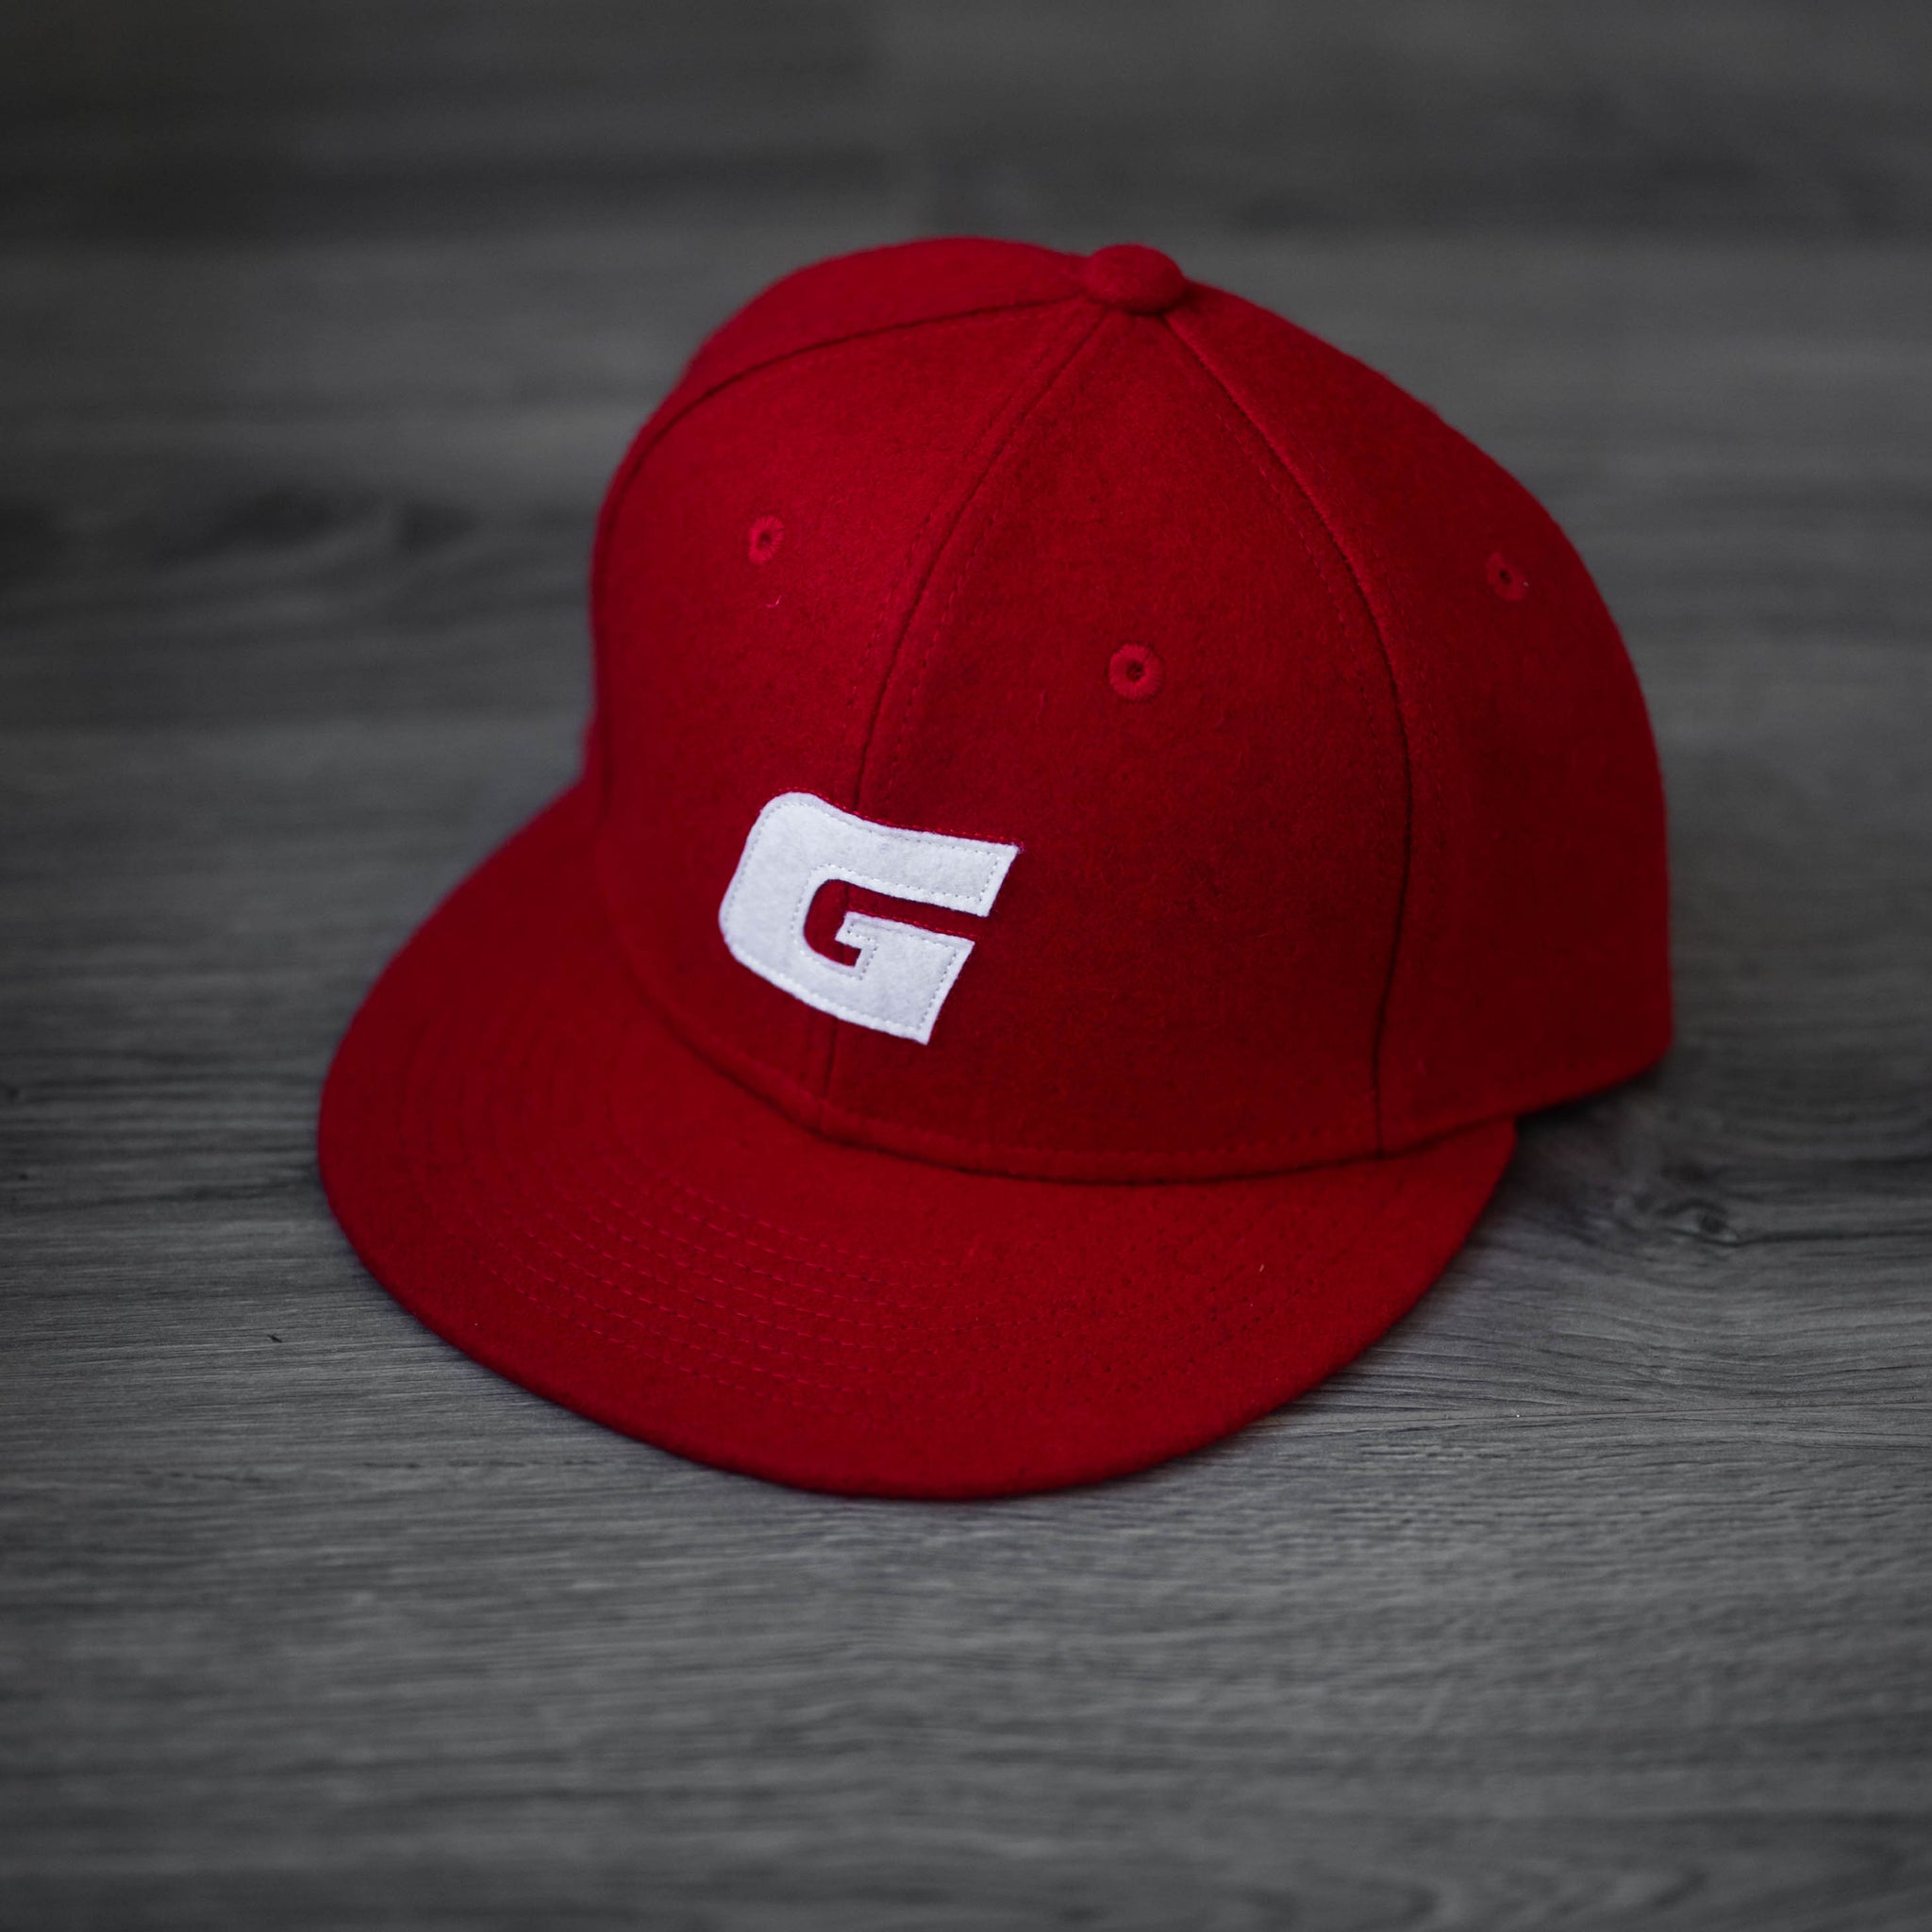 Gent Ball Cap - Red